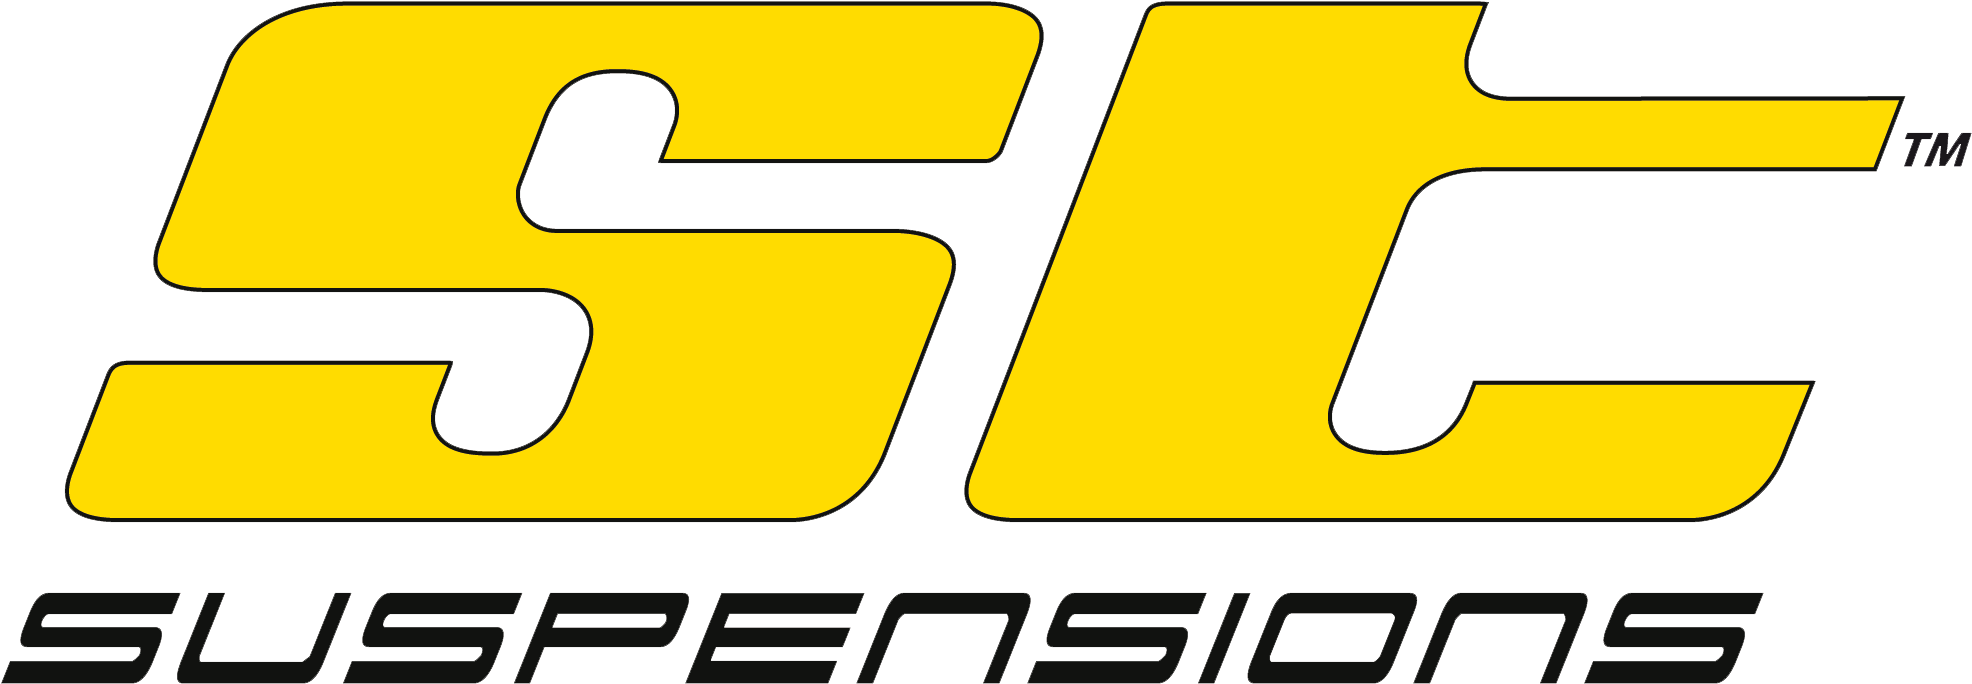 223-2232029_st-logo-png-st-suspension-logo